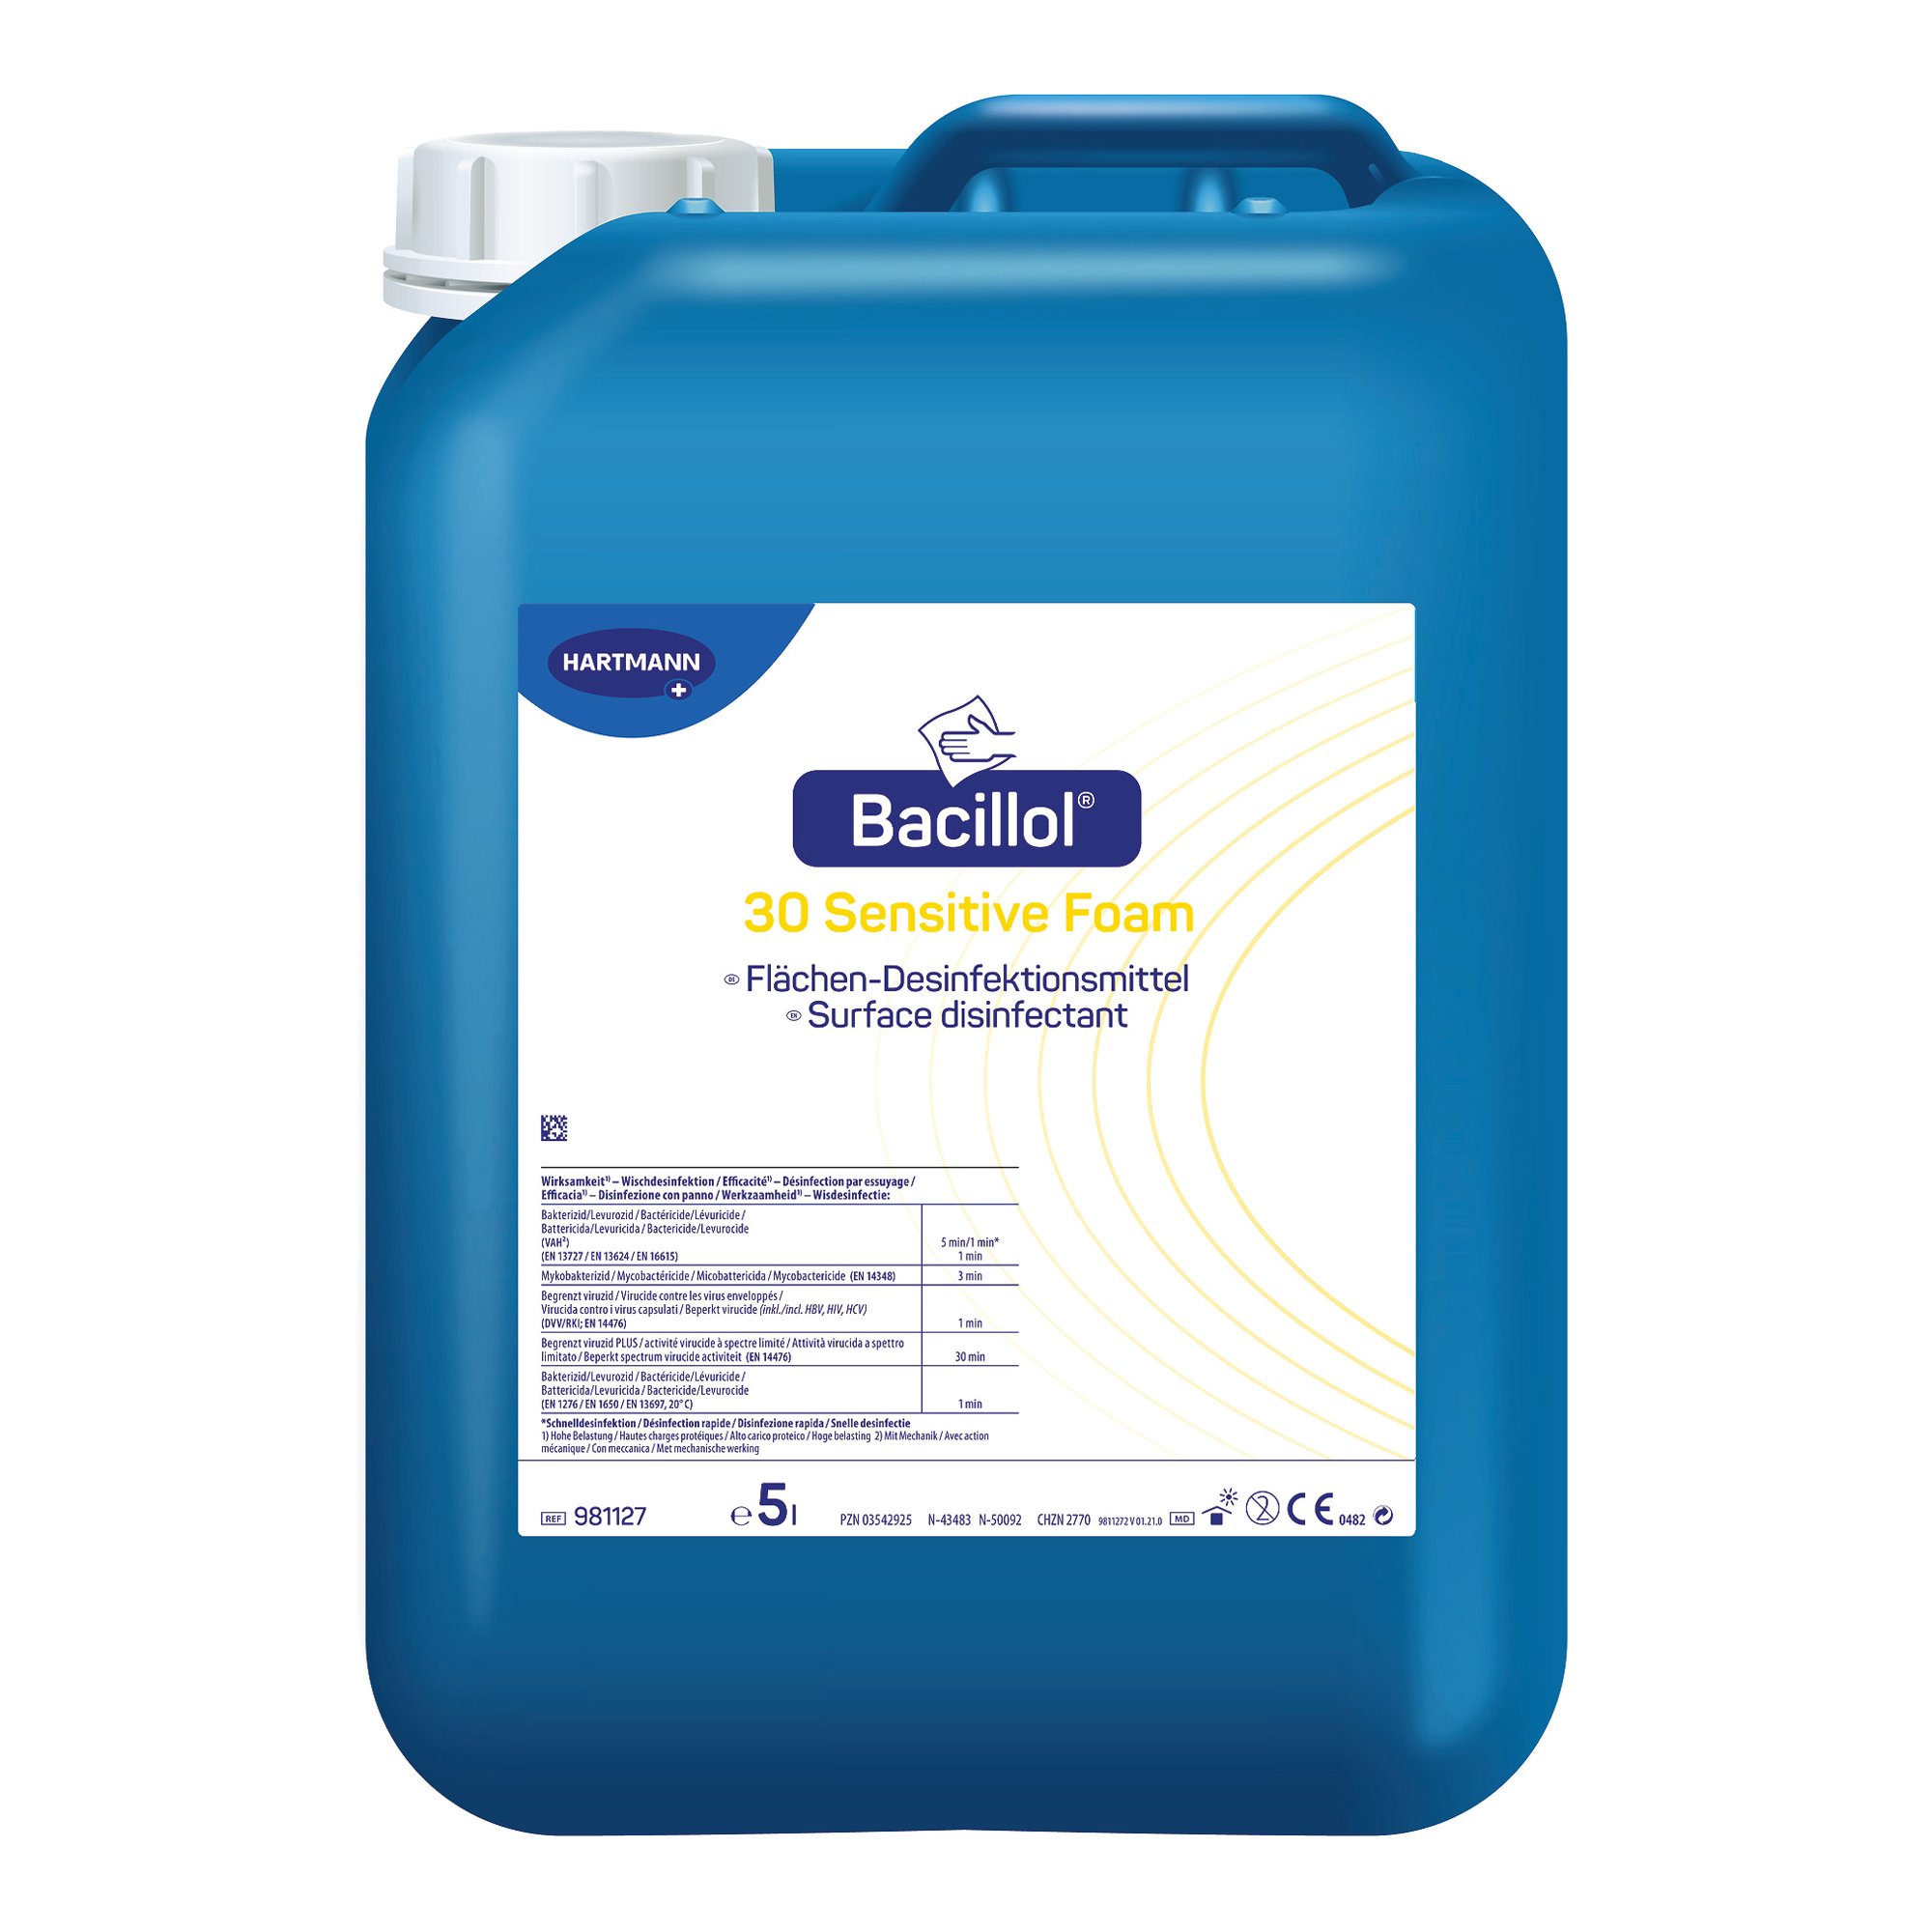 Bode Bacillol 30 Sensitive Foam gering-alkoholisches Desinfektionsmittel